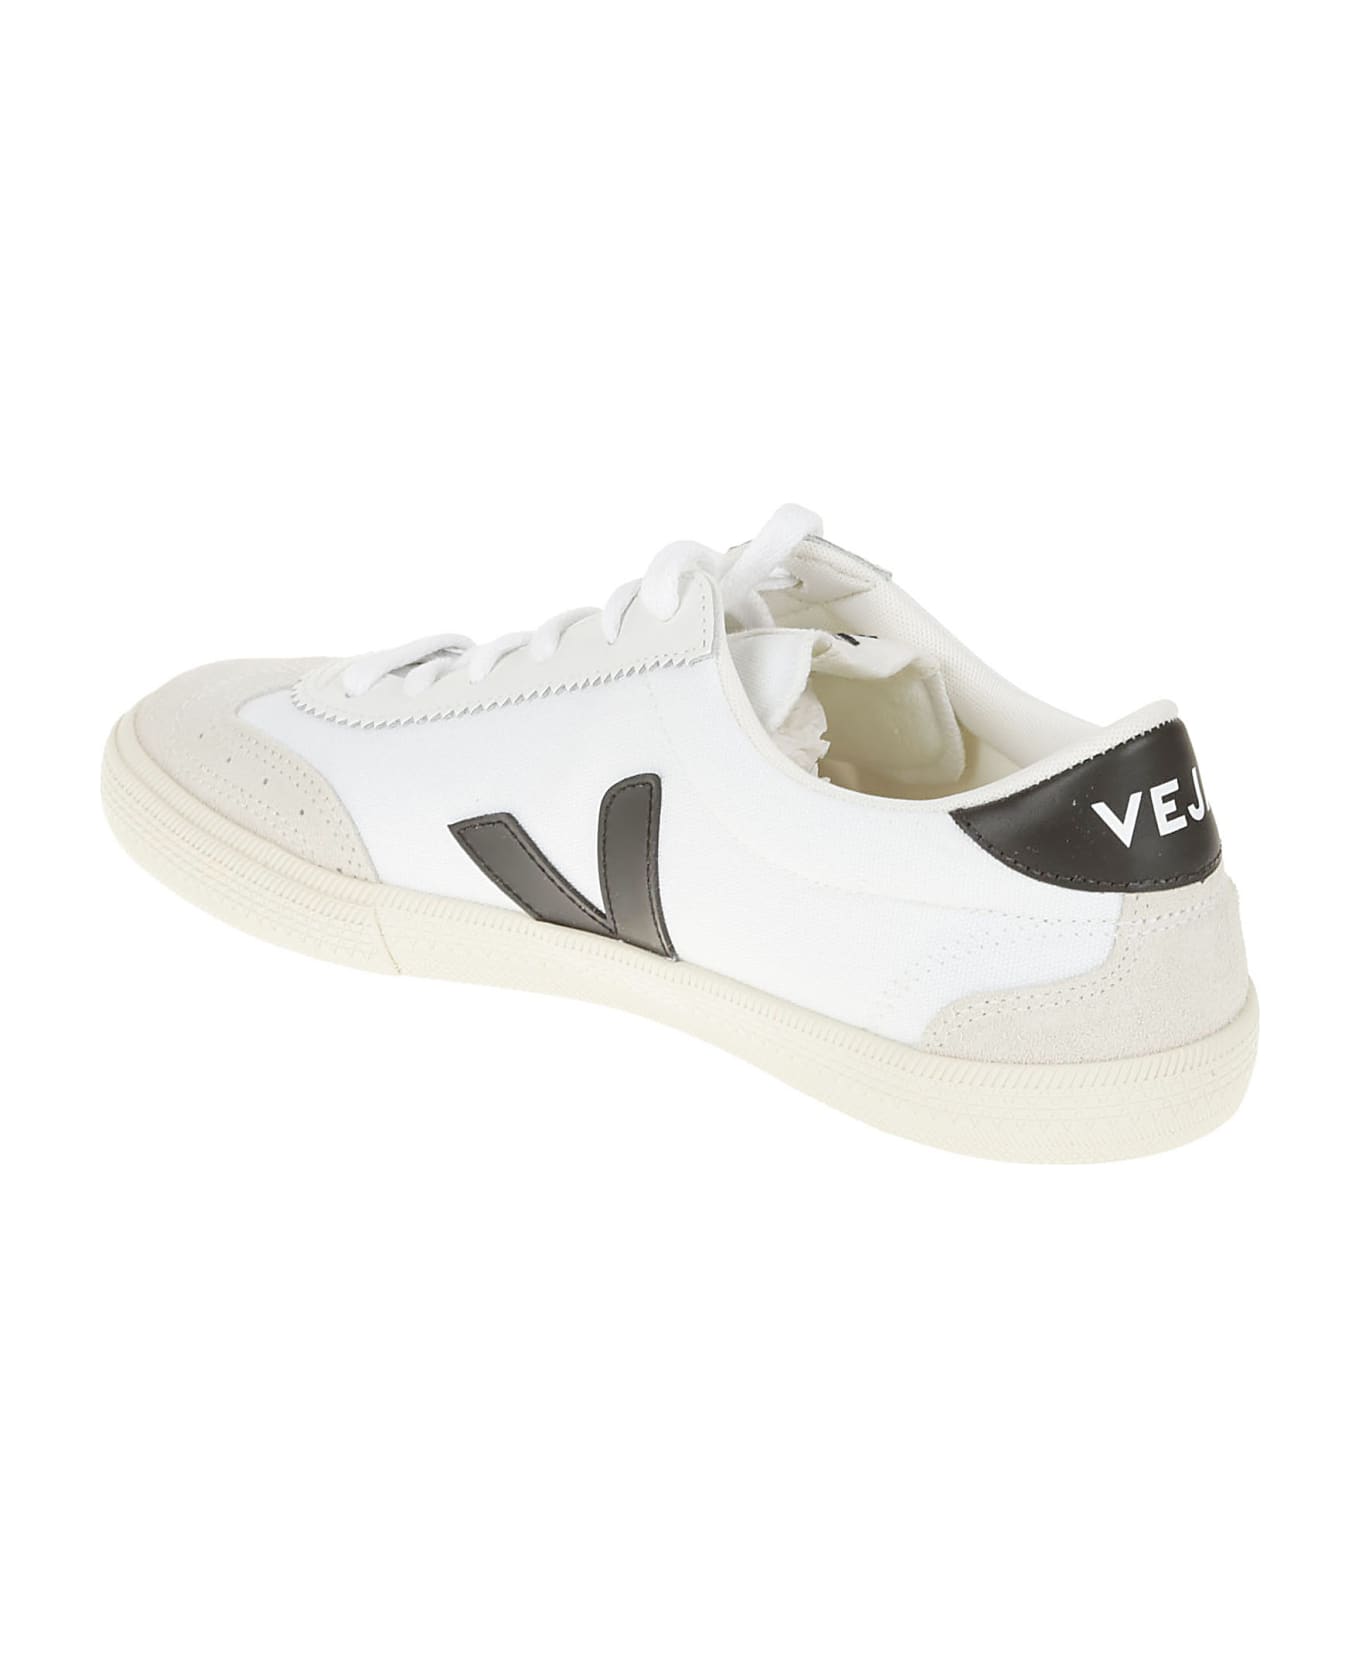 Veja Side Logo Sneakers - White/Black スニーカー